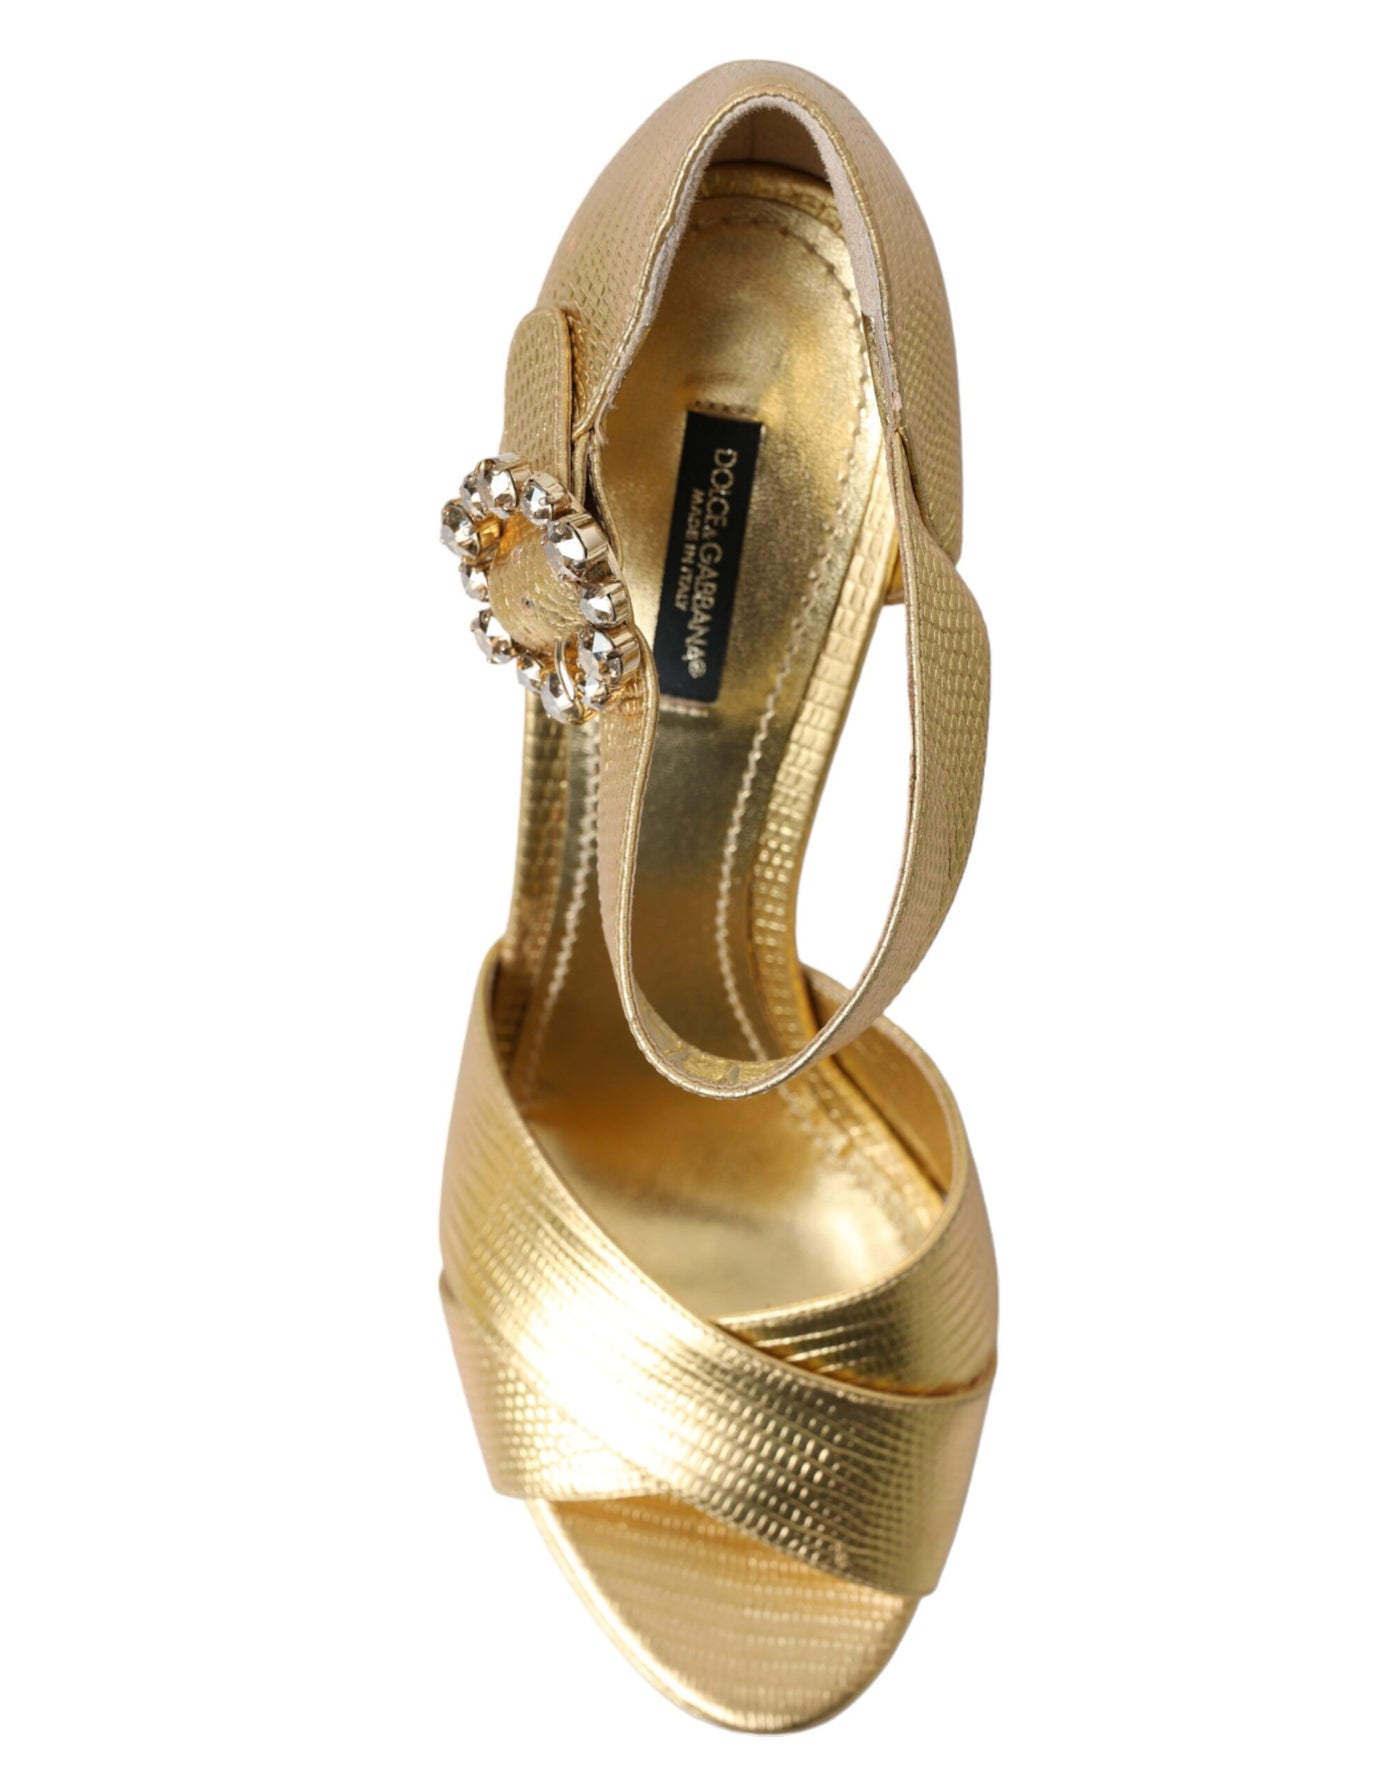 Gold Crystal Ankle Strap Platform Sandals Shoes